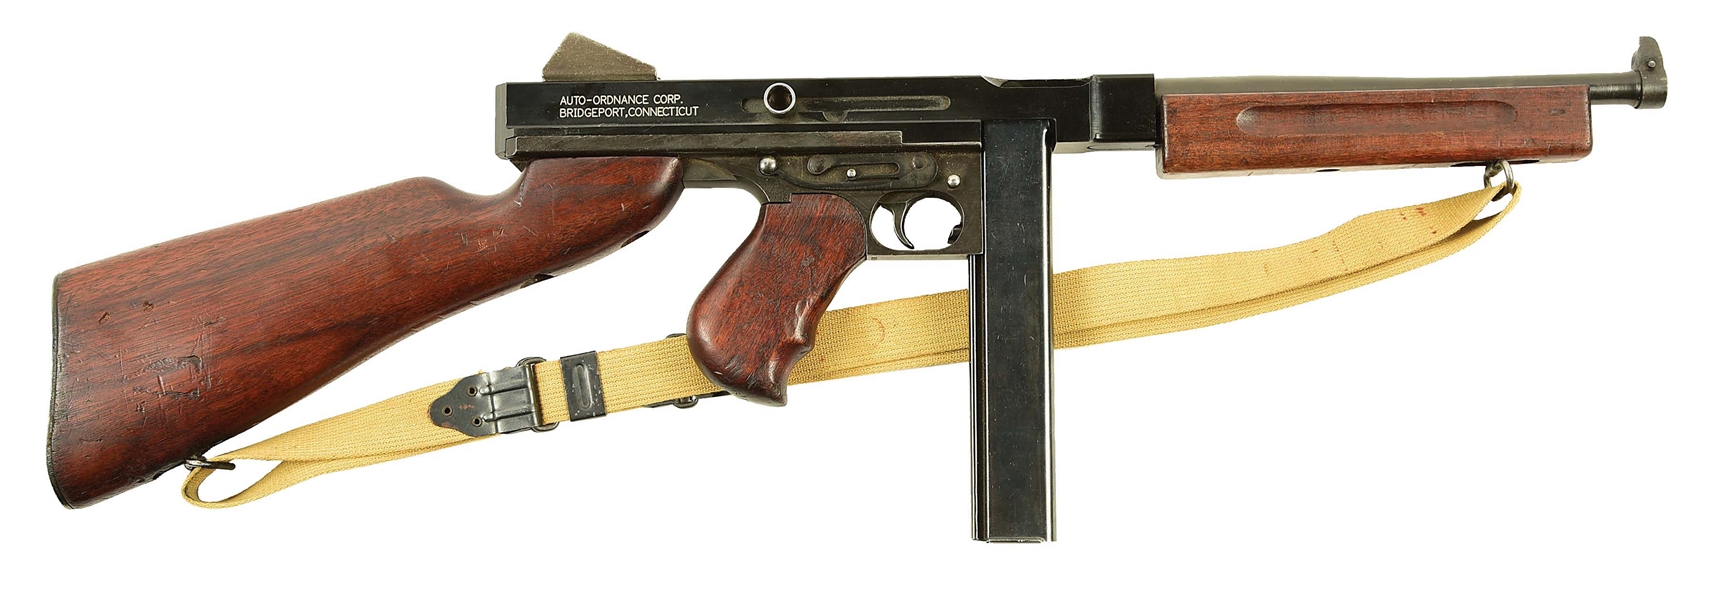 M1A1 THOMPSON SUBMACHINE GUN PARTS KIT ON DUMMY RECEIVER.